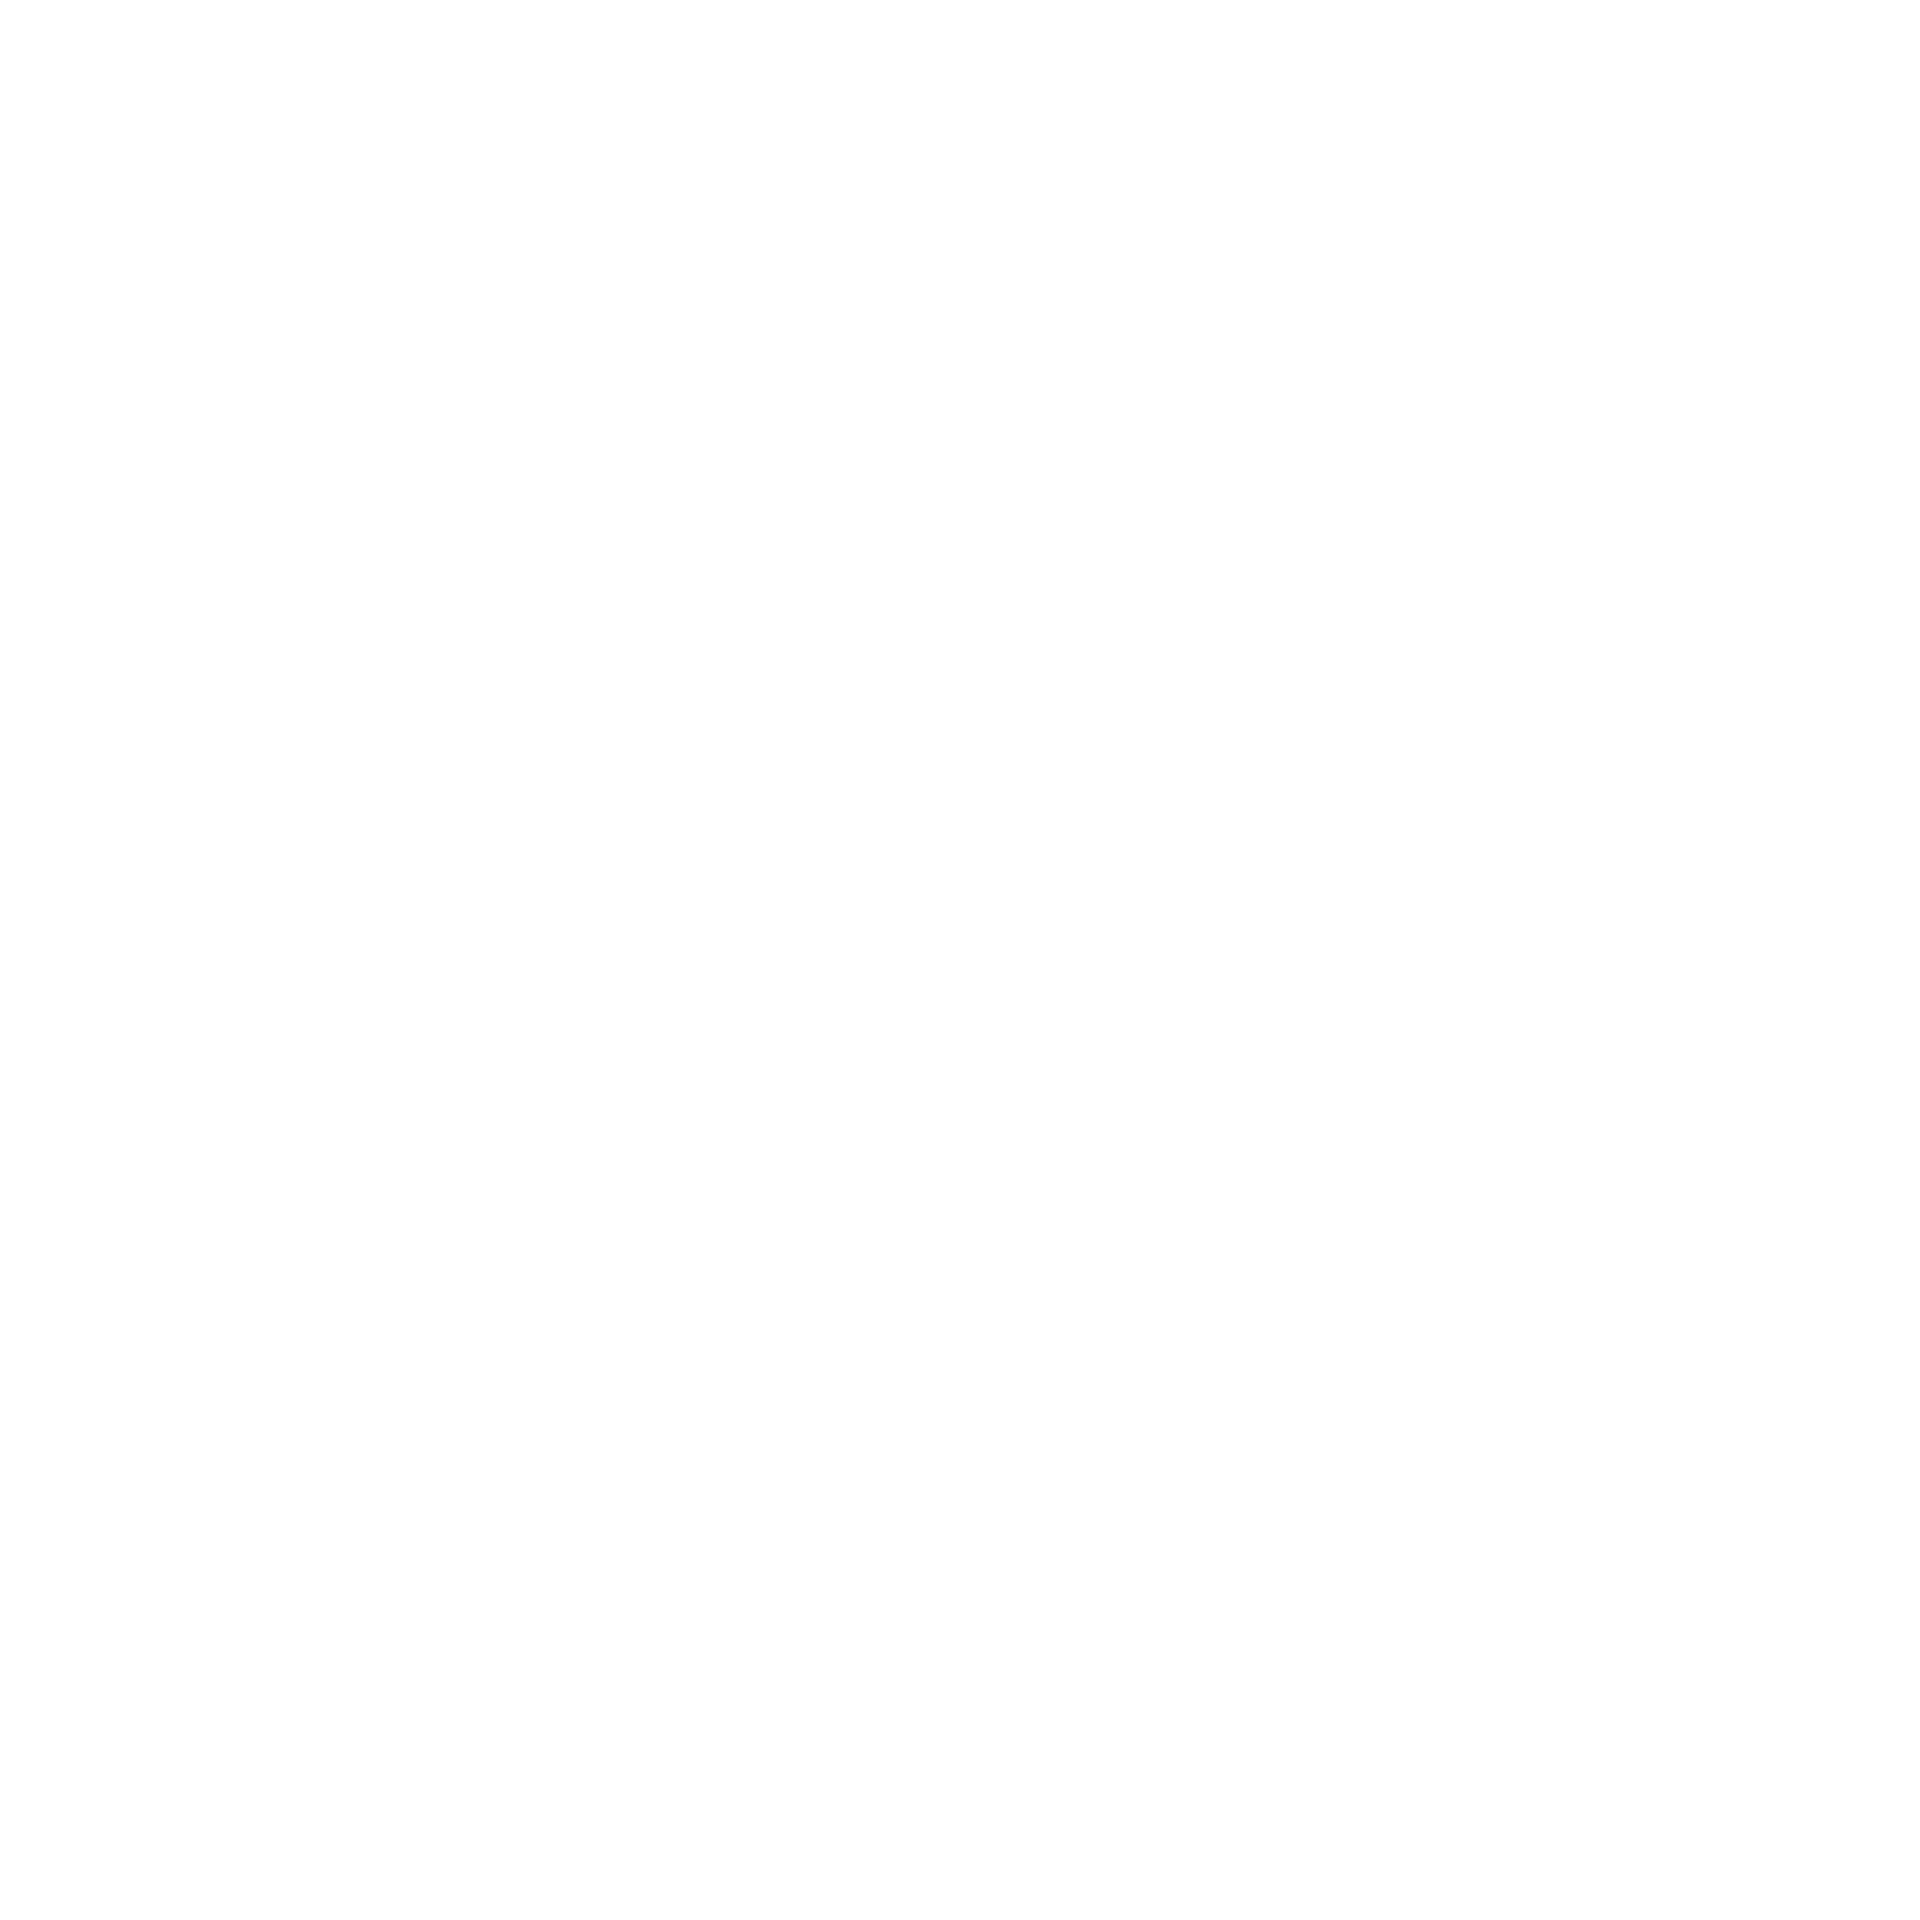 Paula Ciocirlau Counselling & Psychotherapy